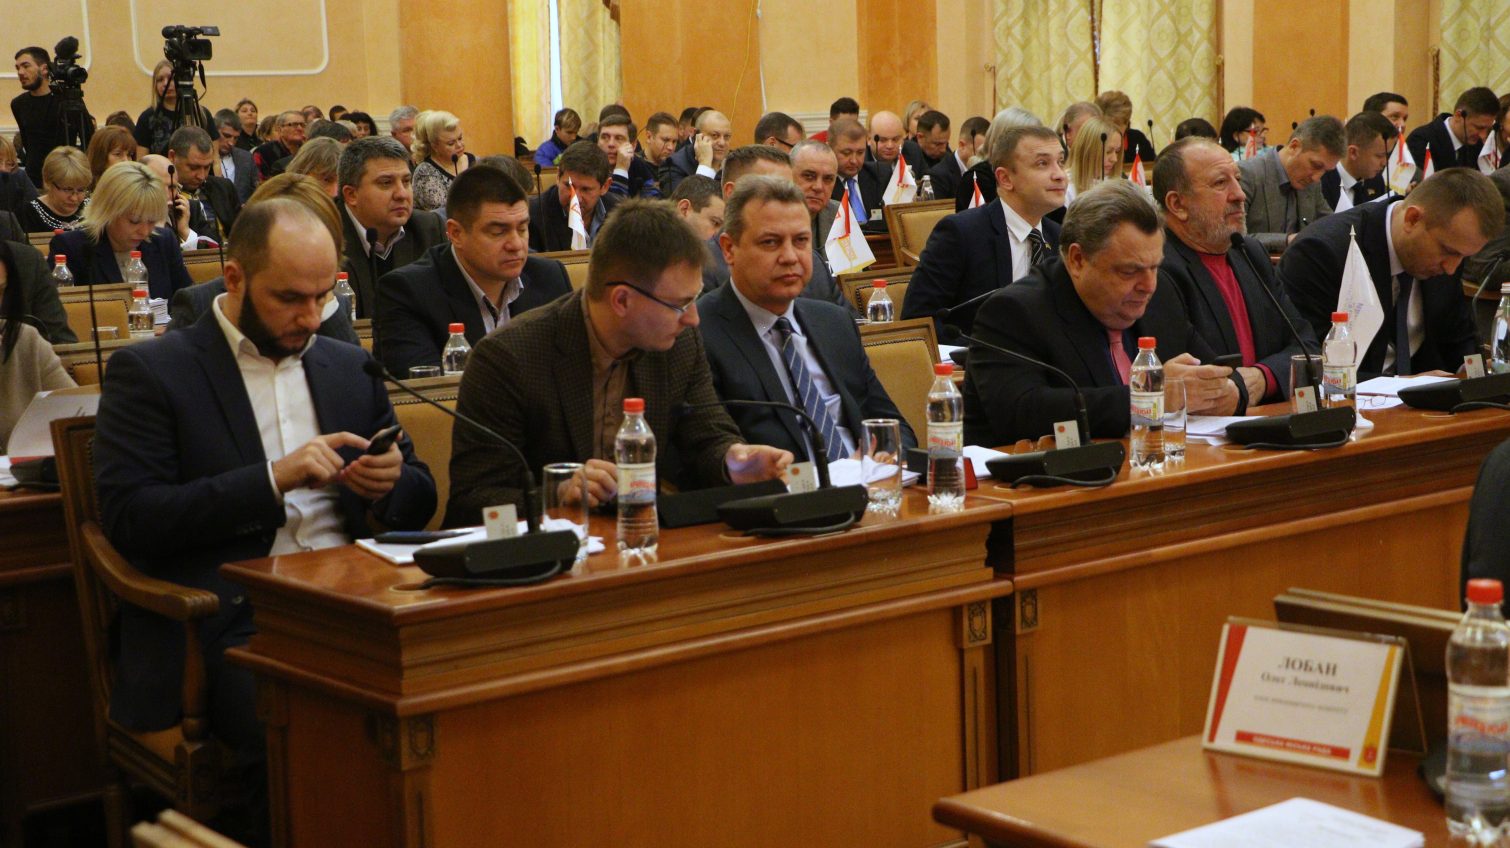 Горячая мартовская сессия: депутаты проголосуют за передачу земли санатория “Молдова”, массовую приватизацию и электронный билет «фото»